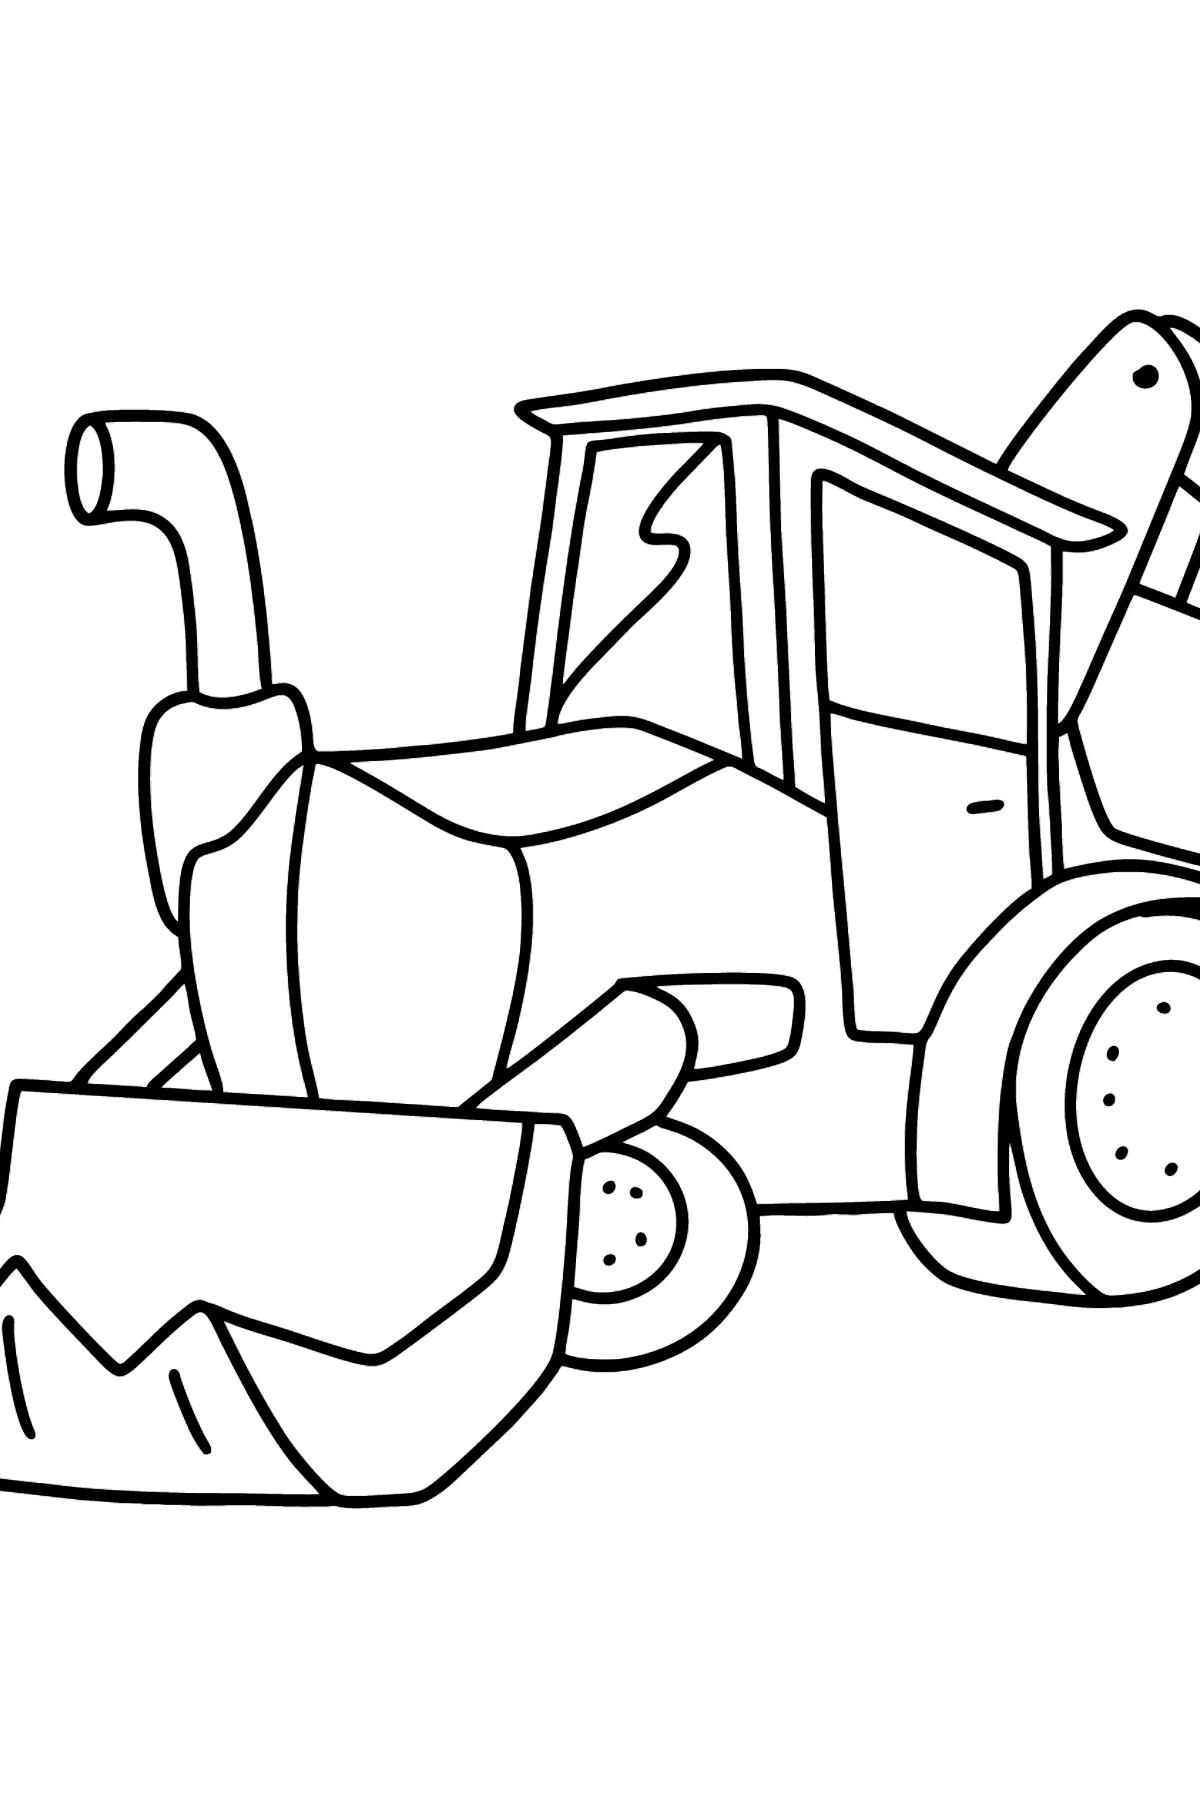 Coloriage - Tracteur avec deux godets - Coloriages pour les Enfants